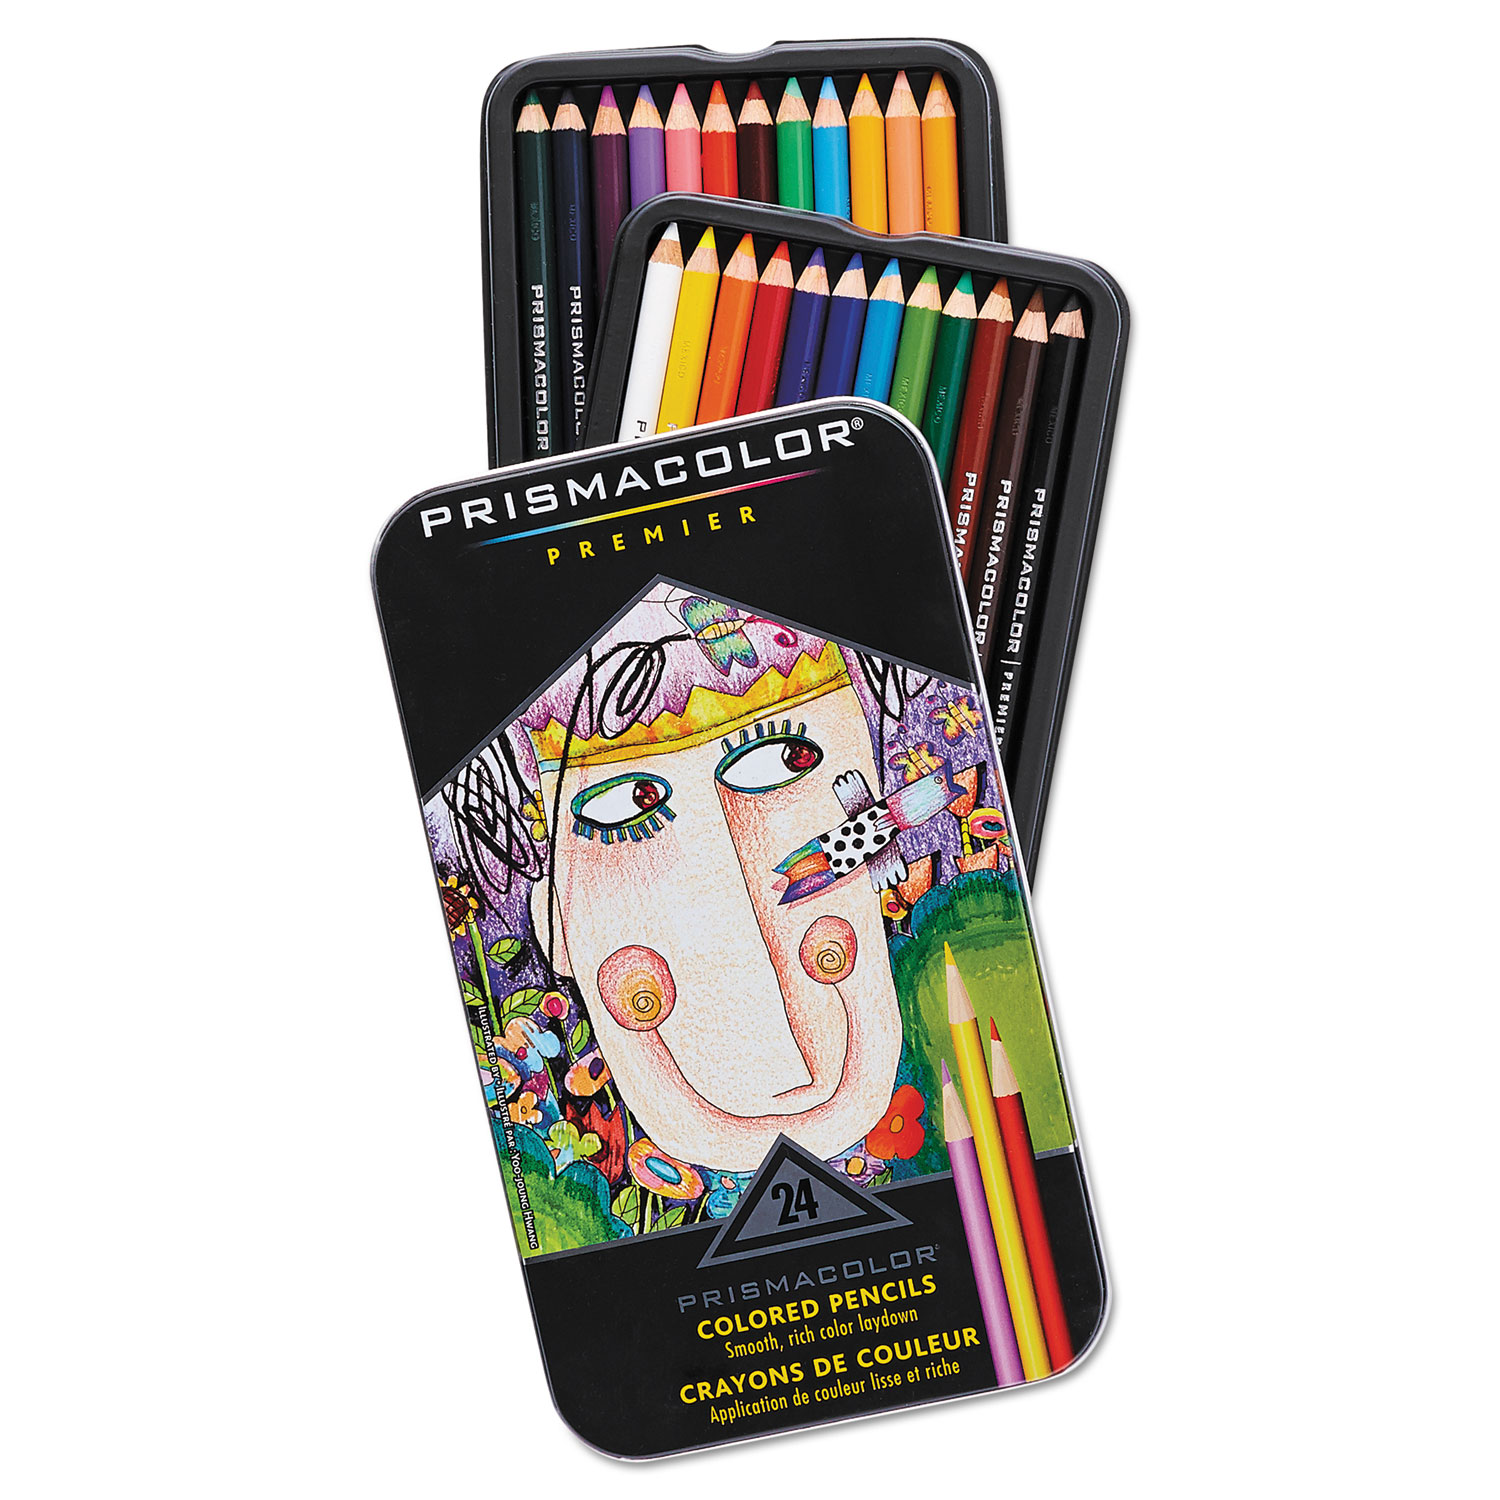  Prismacolor 3597THT Premier Colored Pencil, 3 mm, 2B (#1), Assorted Lead/Barrel Colors, 24/Pack (SAN3597THT) 